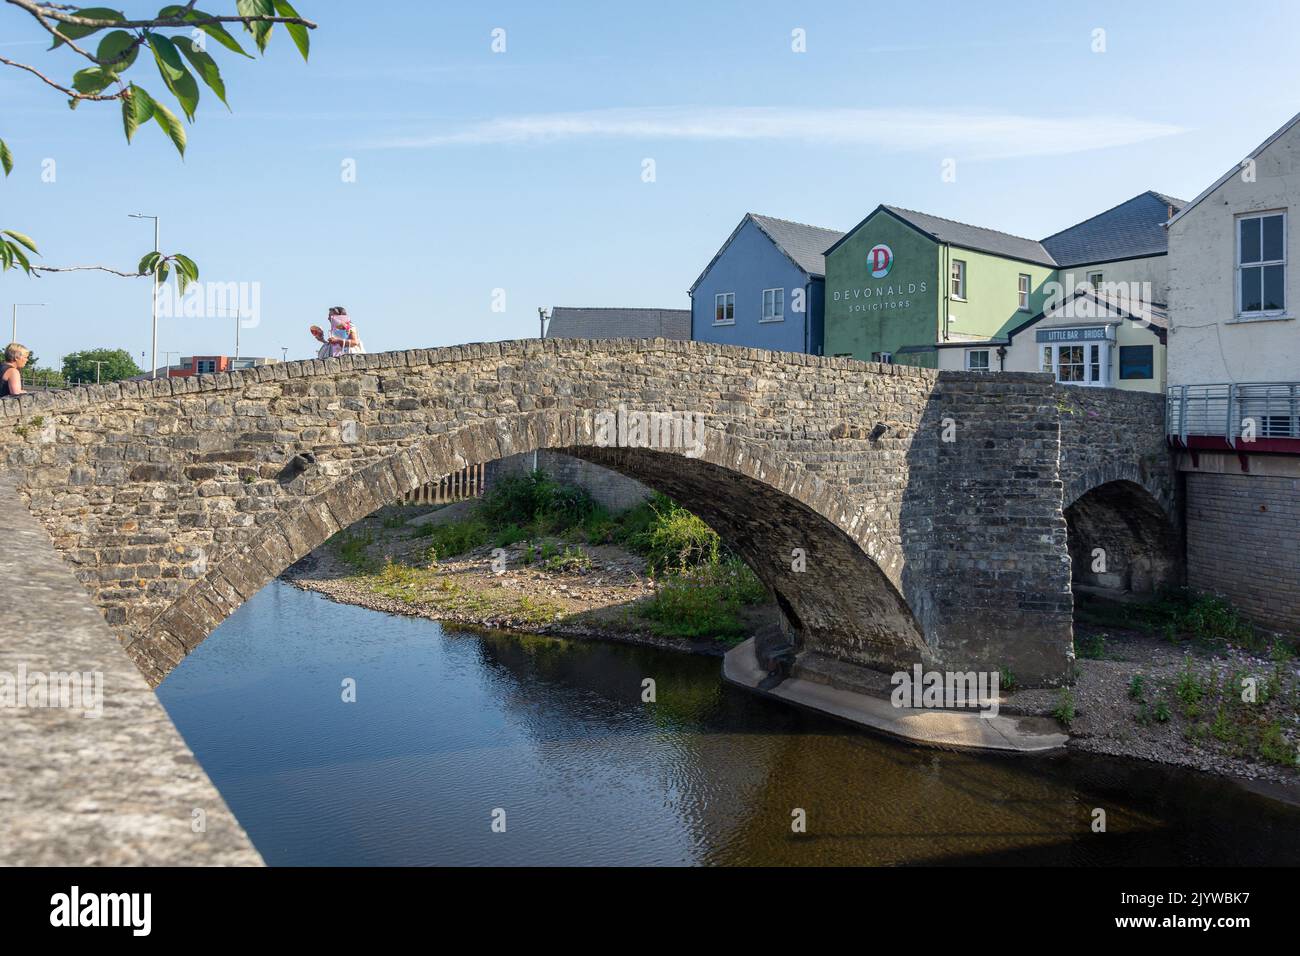 The Old Bridge Over River Ogmore, Bridgend (Pen-y-bont ar Ogwr), Bridgend County Borough, pays de Galles (Cymru), Royaume-Uni Banque D'Images